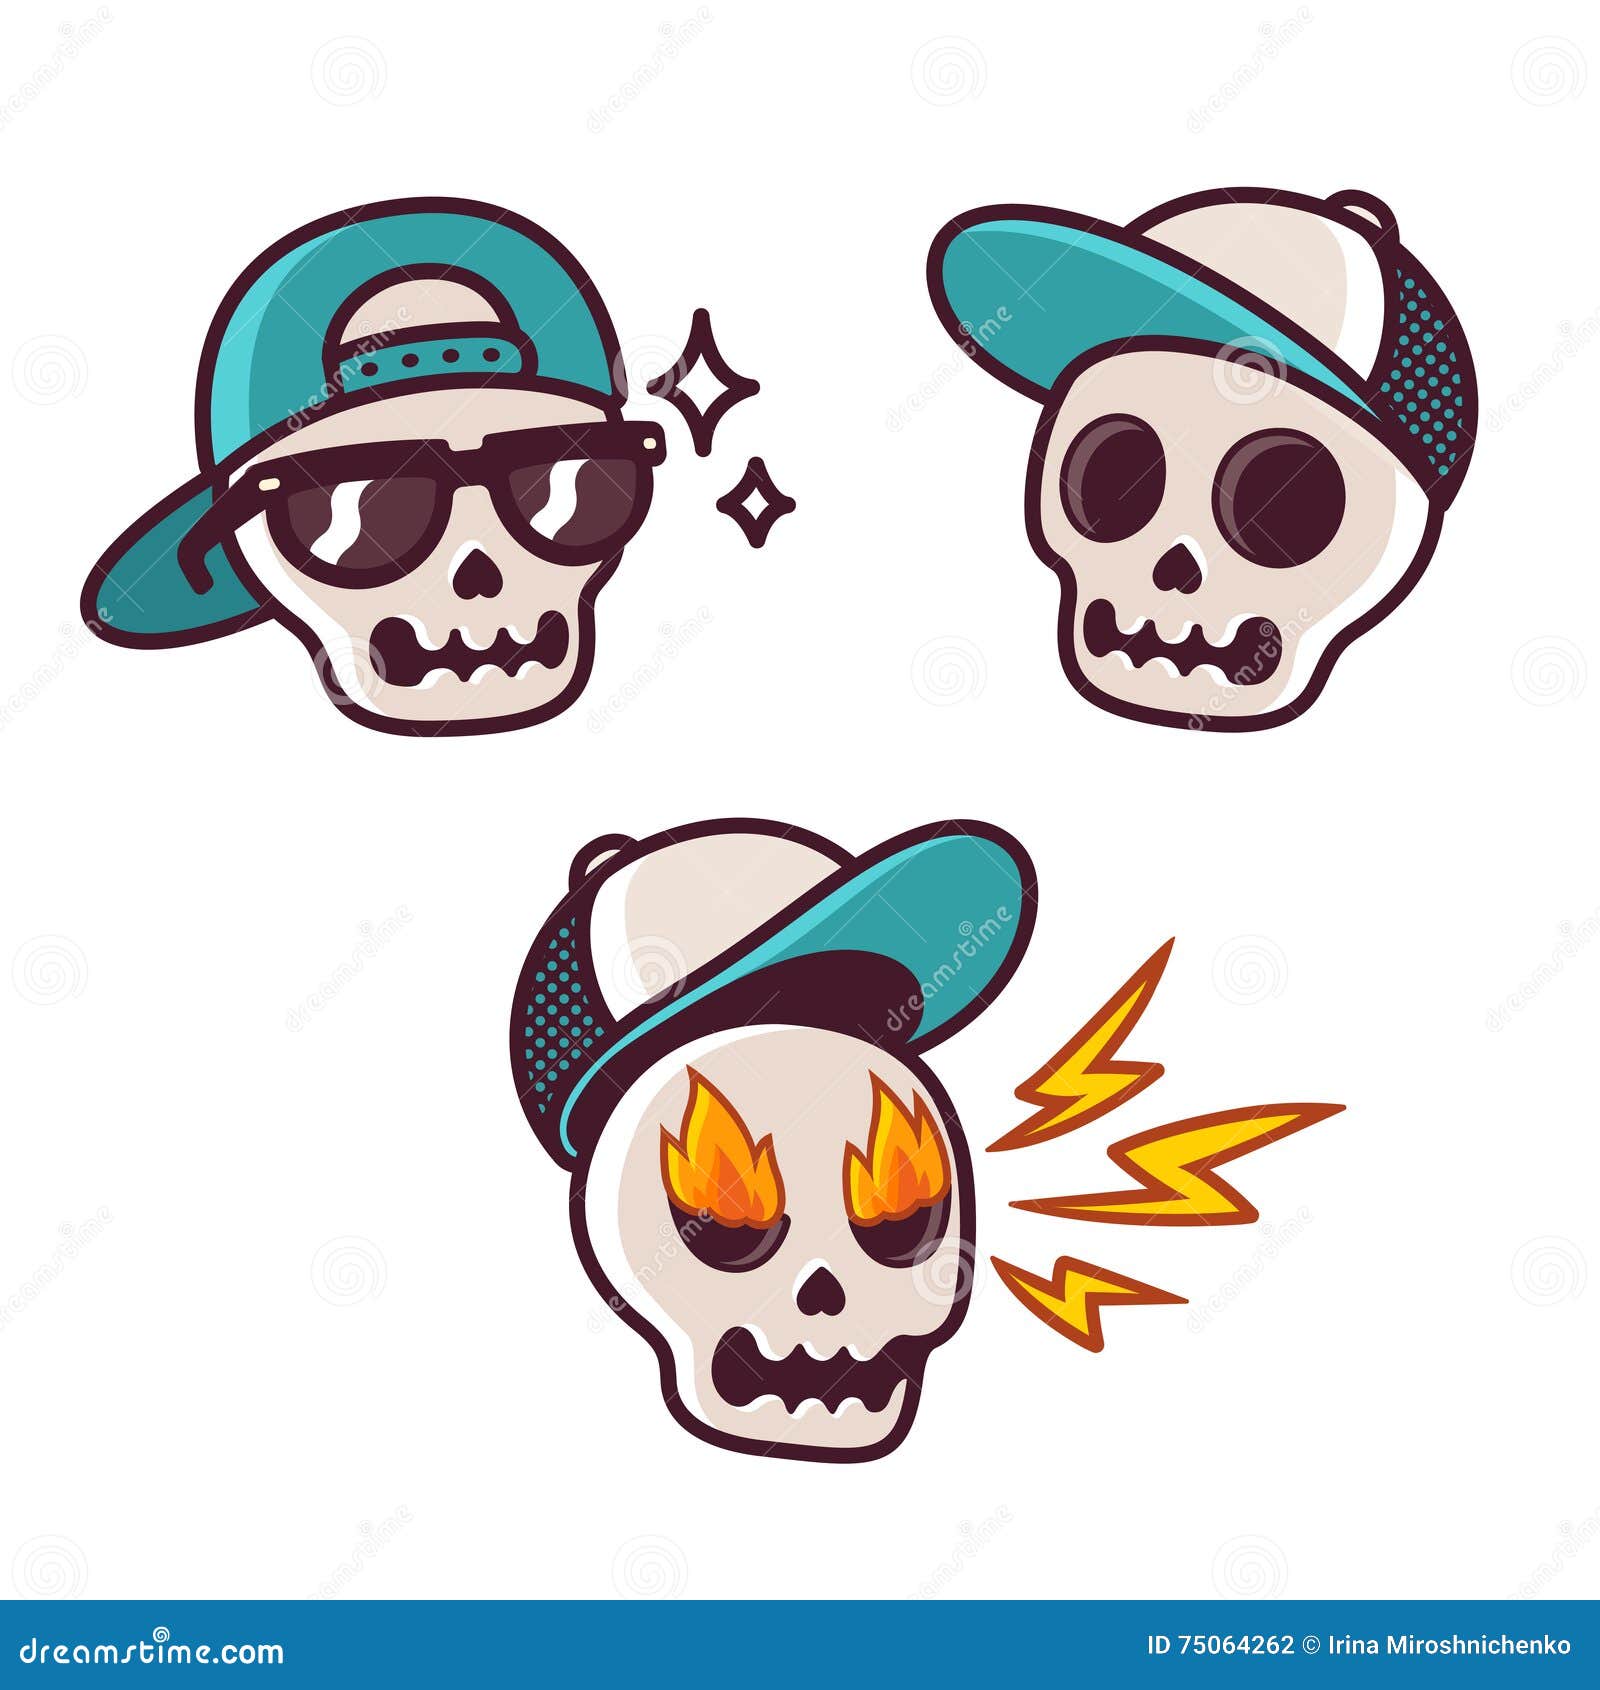 Funny cartoon skull set stock vector. Illustration of design - 75064262